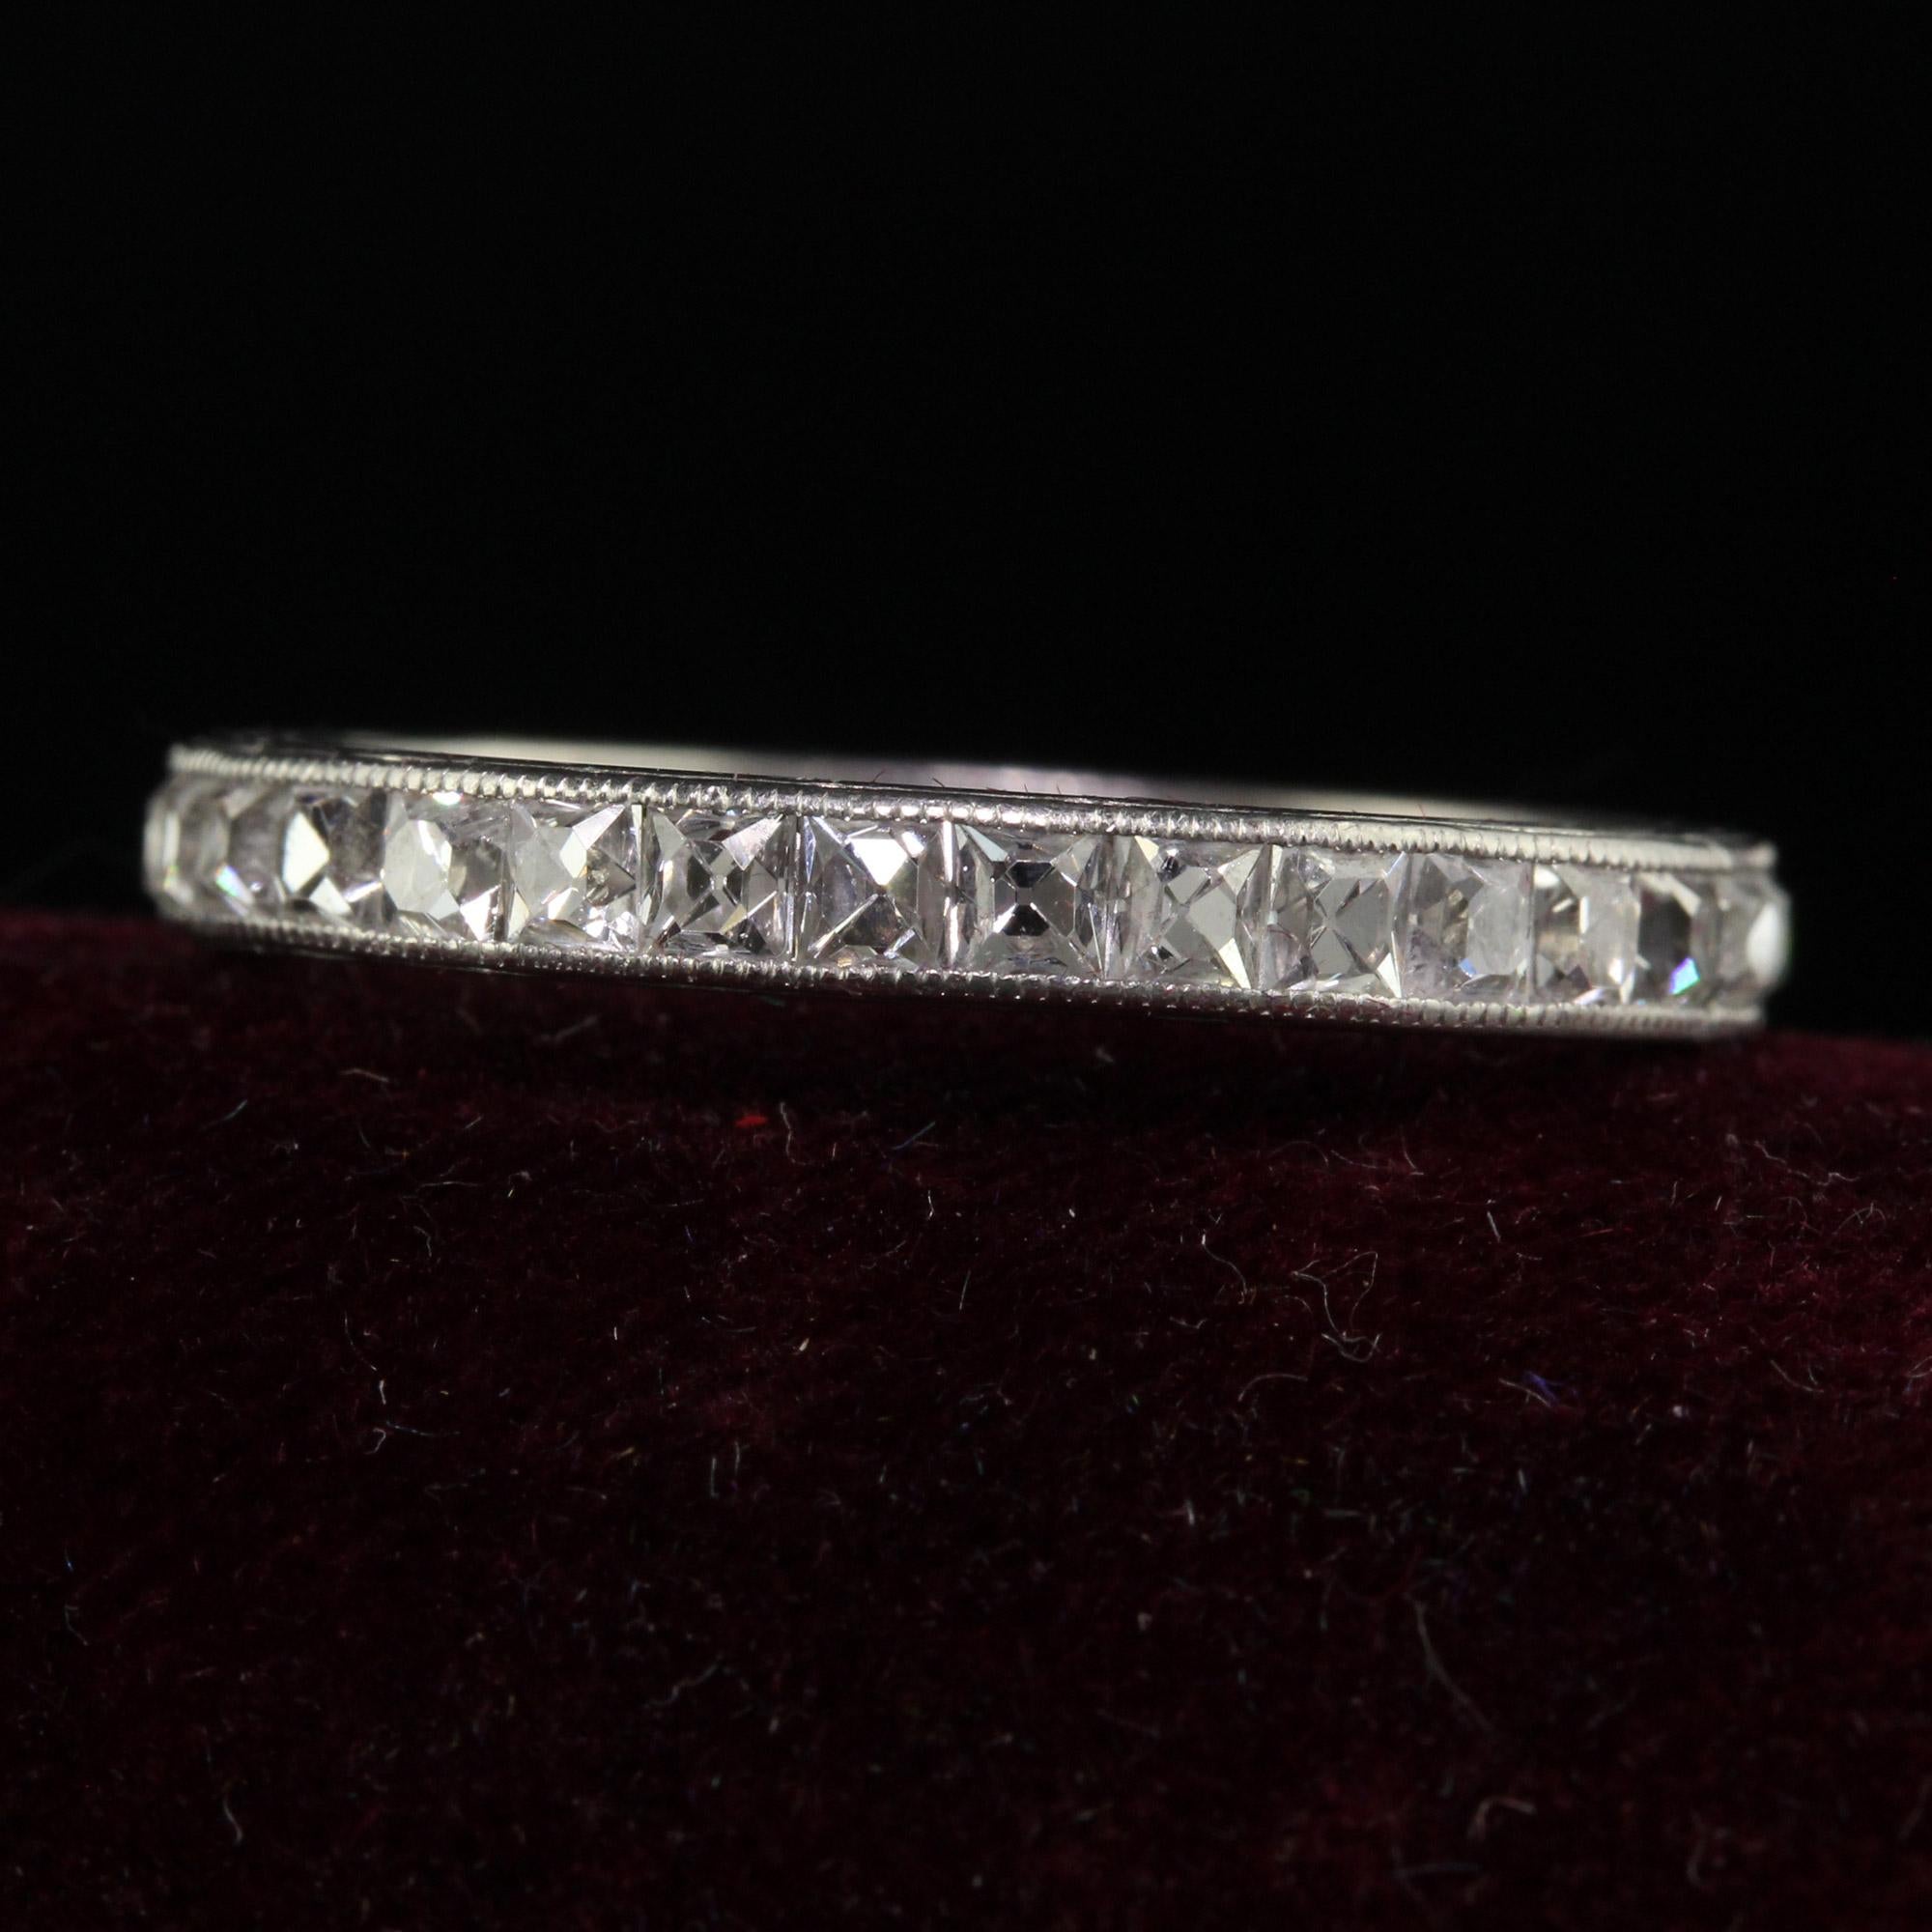 Schöne antike Edwardian Platin Französisch Cut Diamond graviert Eternity Ring - Größe 7. Diese unglaubliche Art Deco Französisch geschnitten Diamant Band ist in Platin gefertigt. Der Ring ist mit wunderschönen Diamanten im französischen Schliff